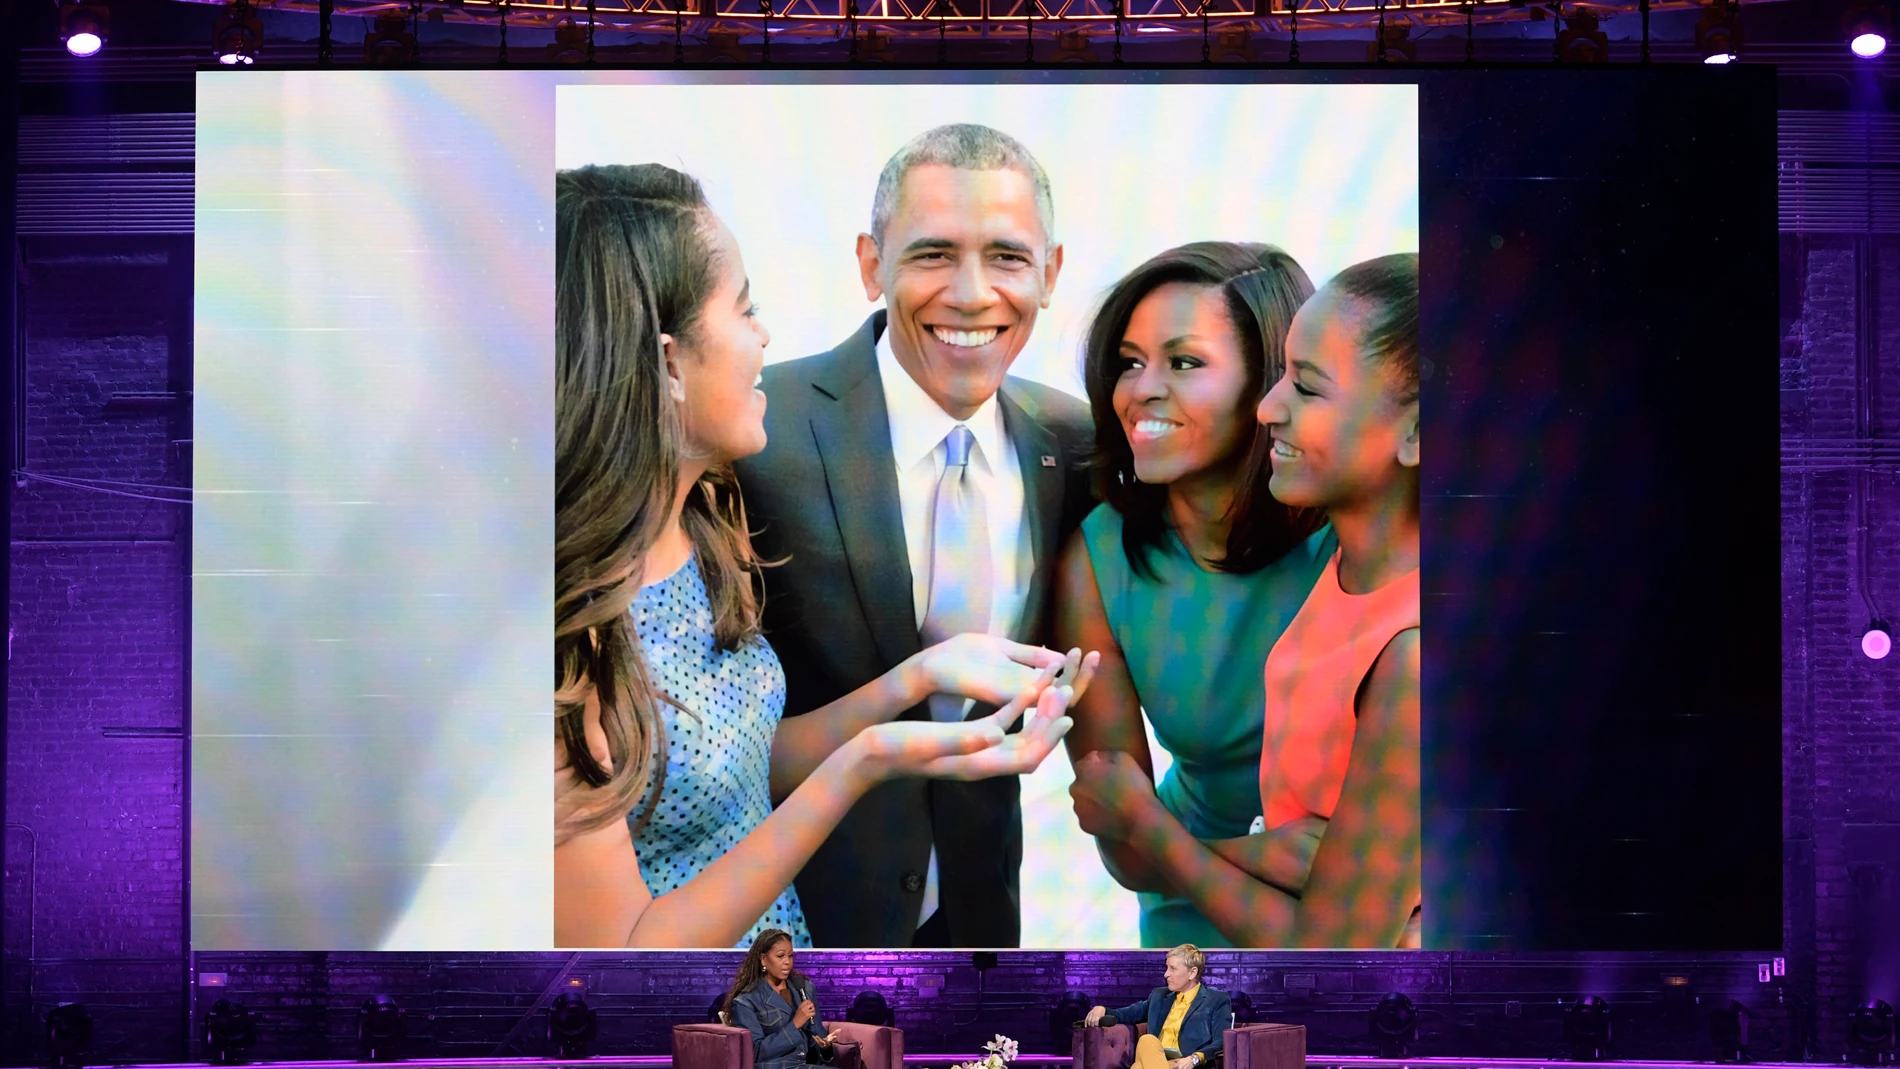 Presentación del último libro de la ex primera dama de EE UU Michelle Obama junto a Ellen DeGeneses en Washington